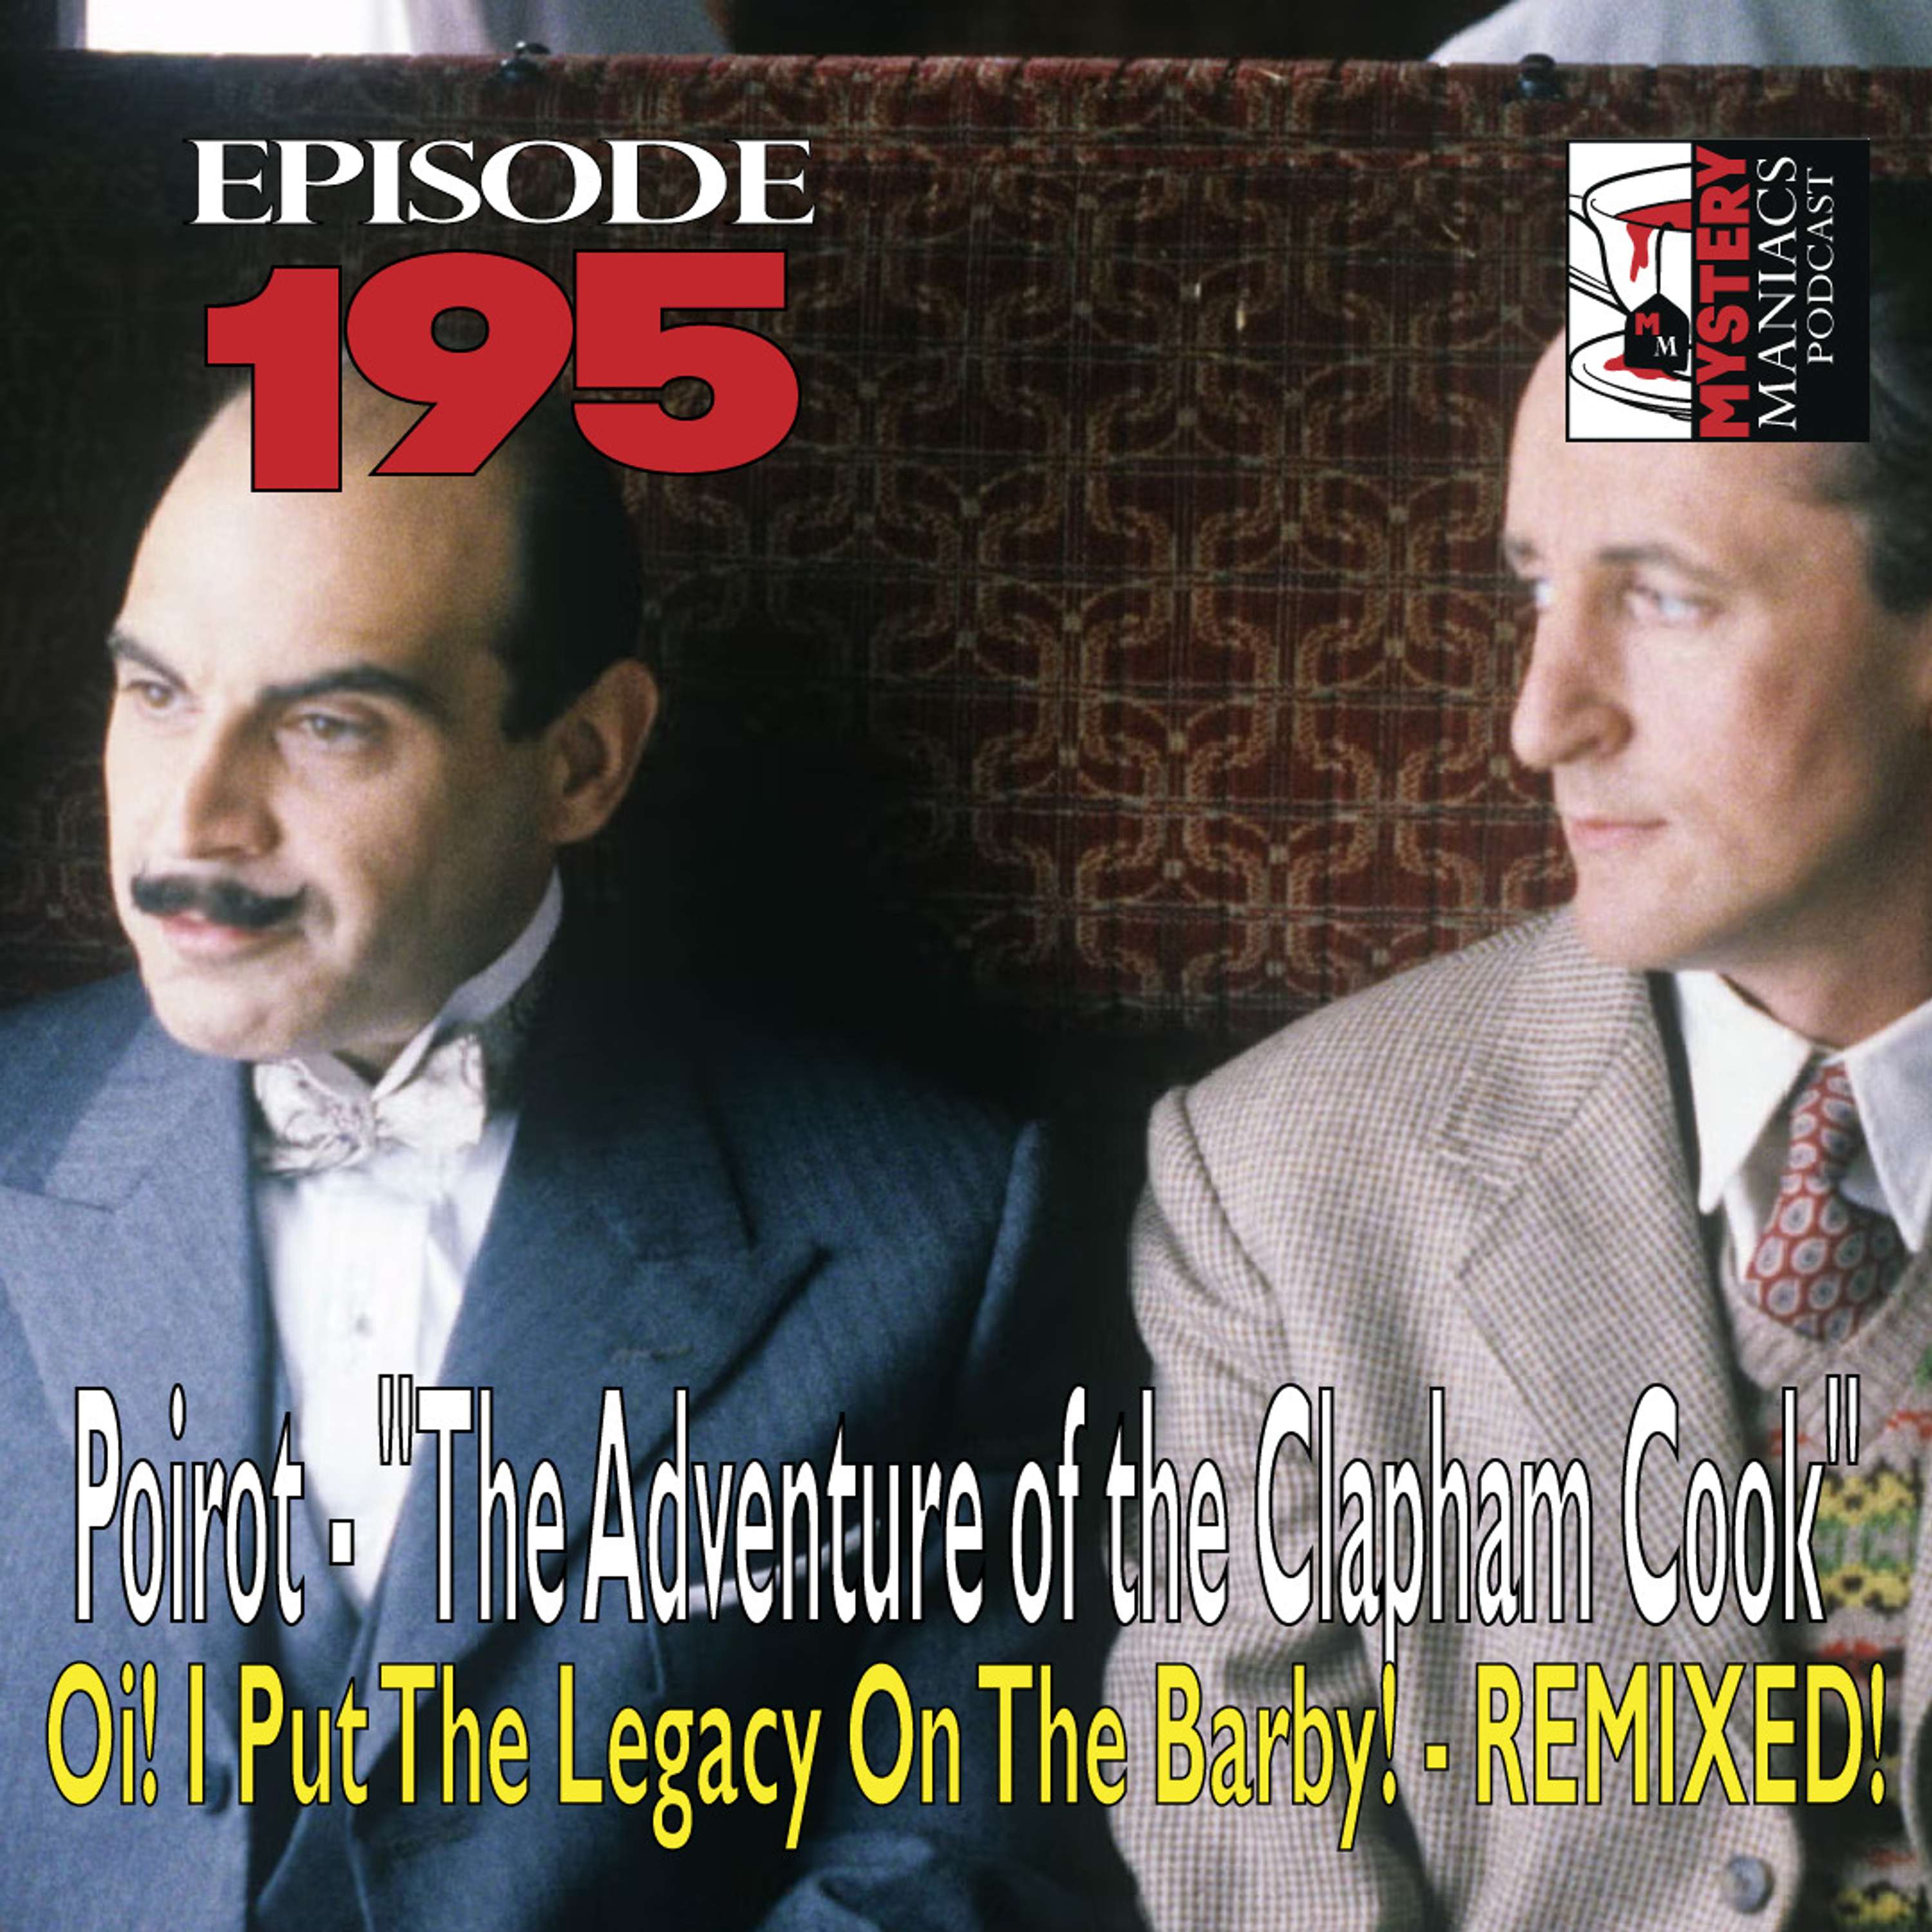 Episode 195 - Poirot - 